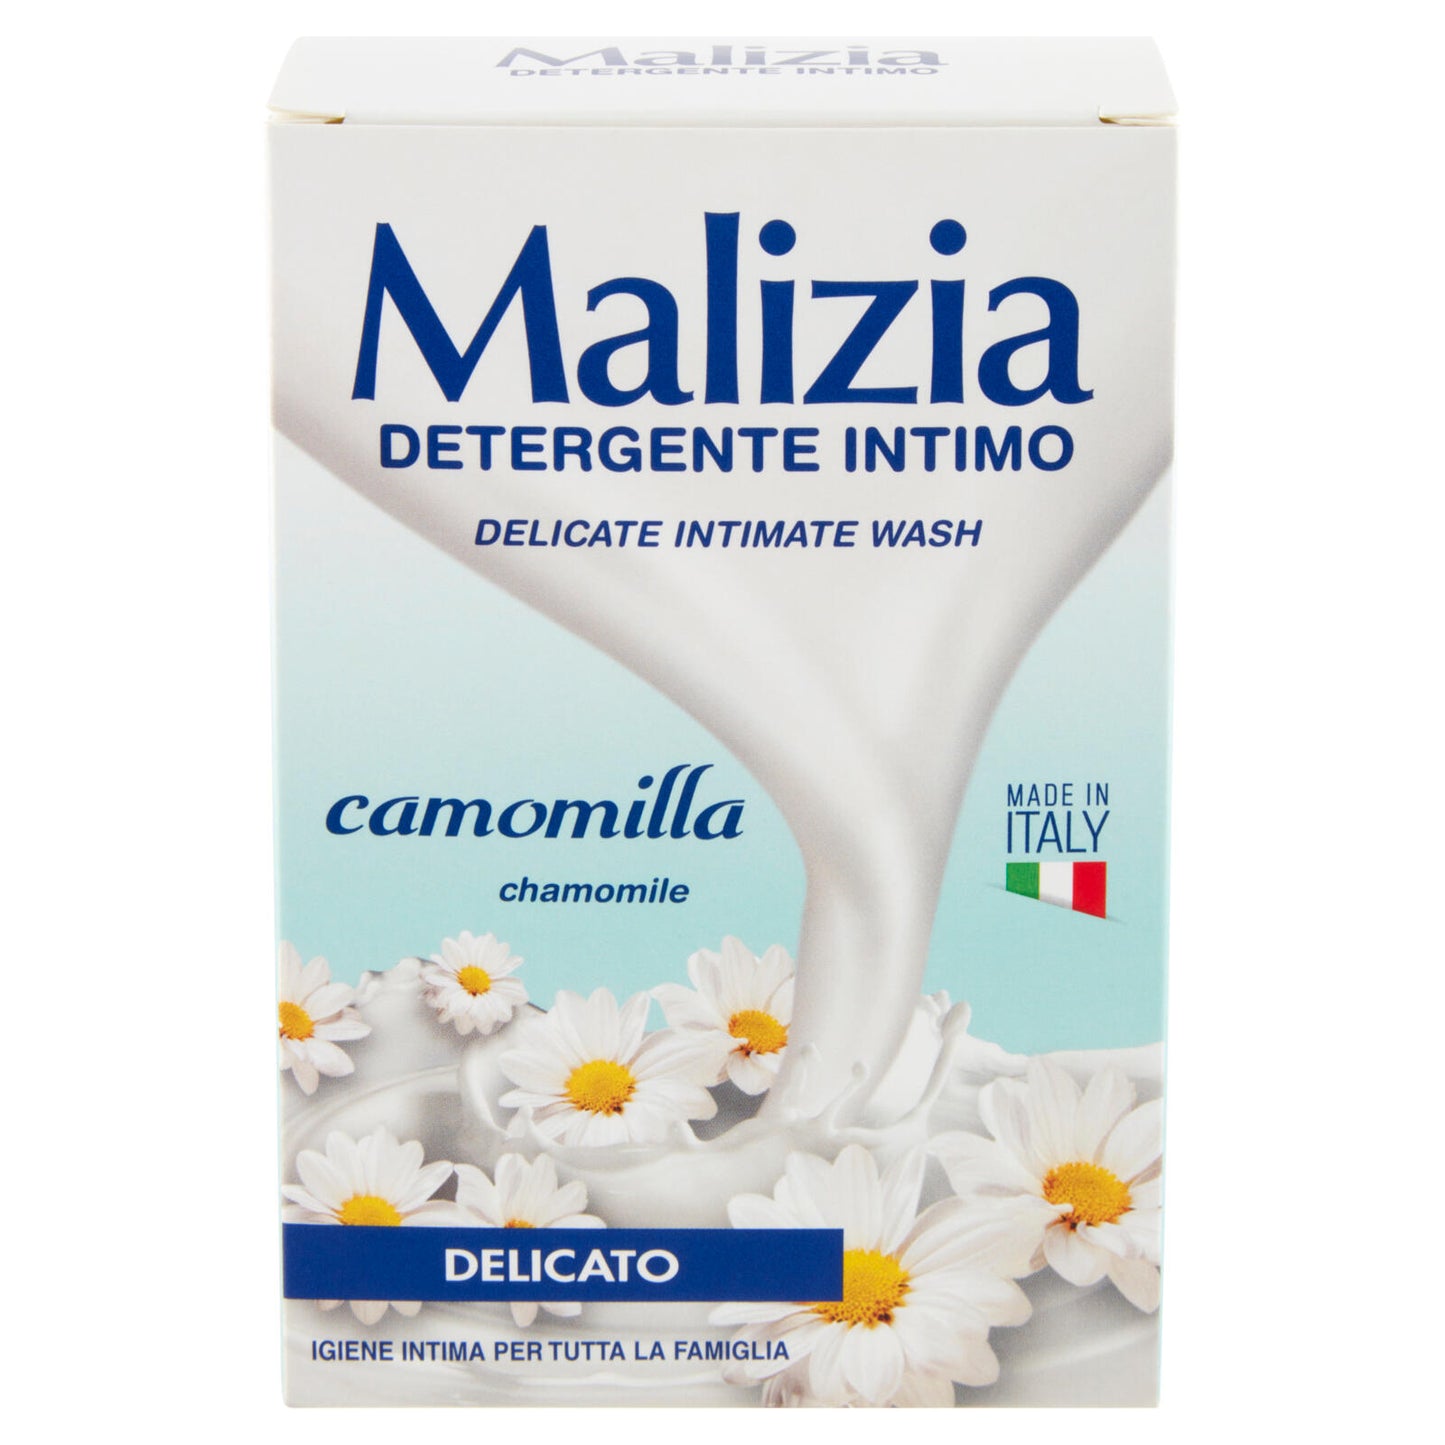 Malizia Detergente Intimo camomilla Delicato 200 mL